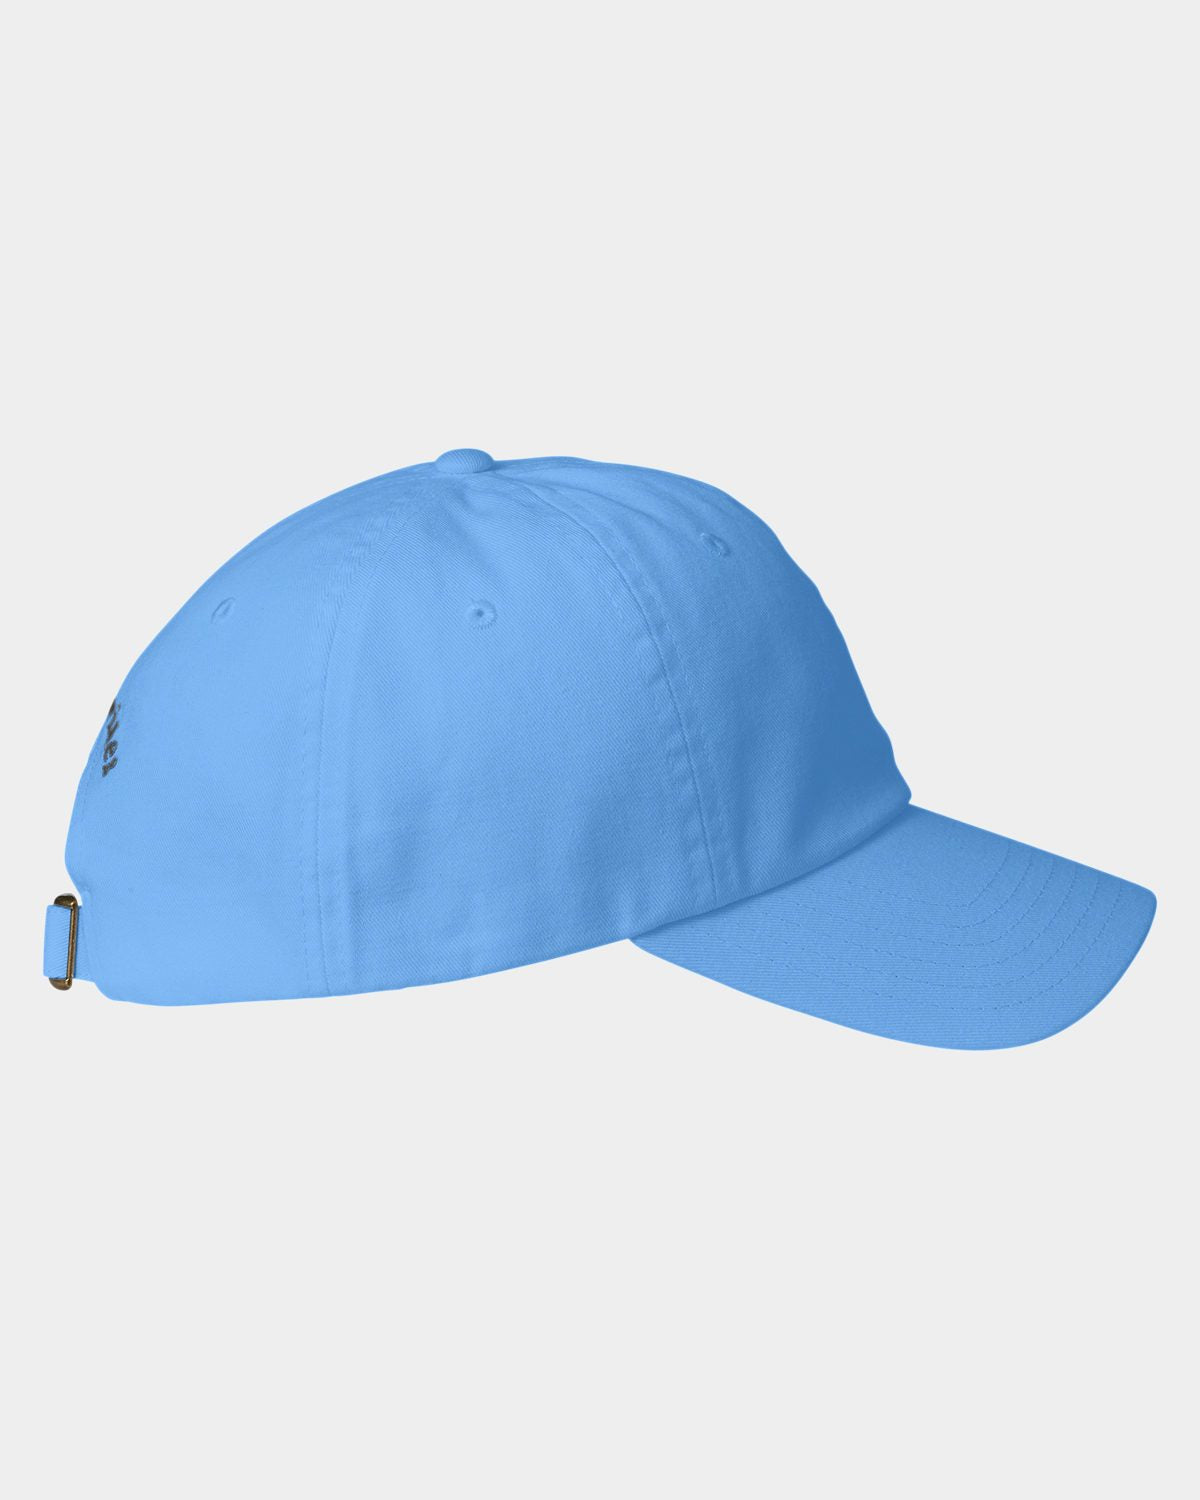 Vineyard Vines Custom Baseball Hats, Light Blue